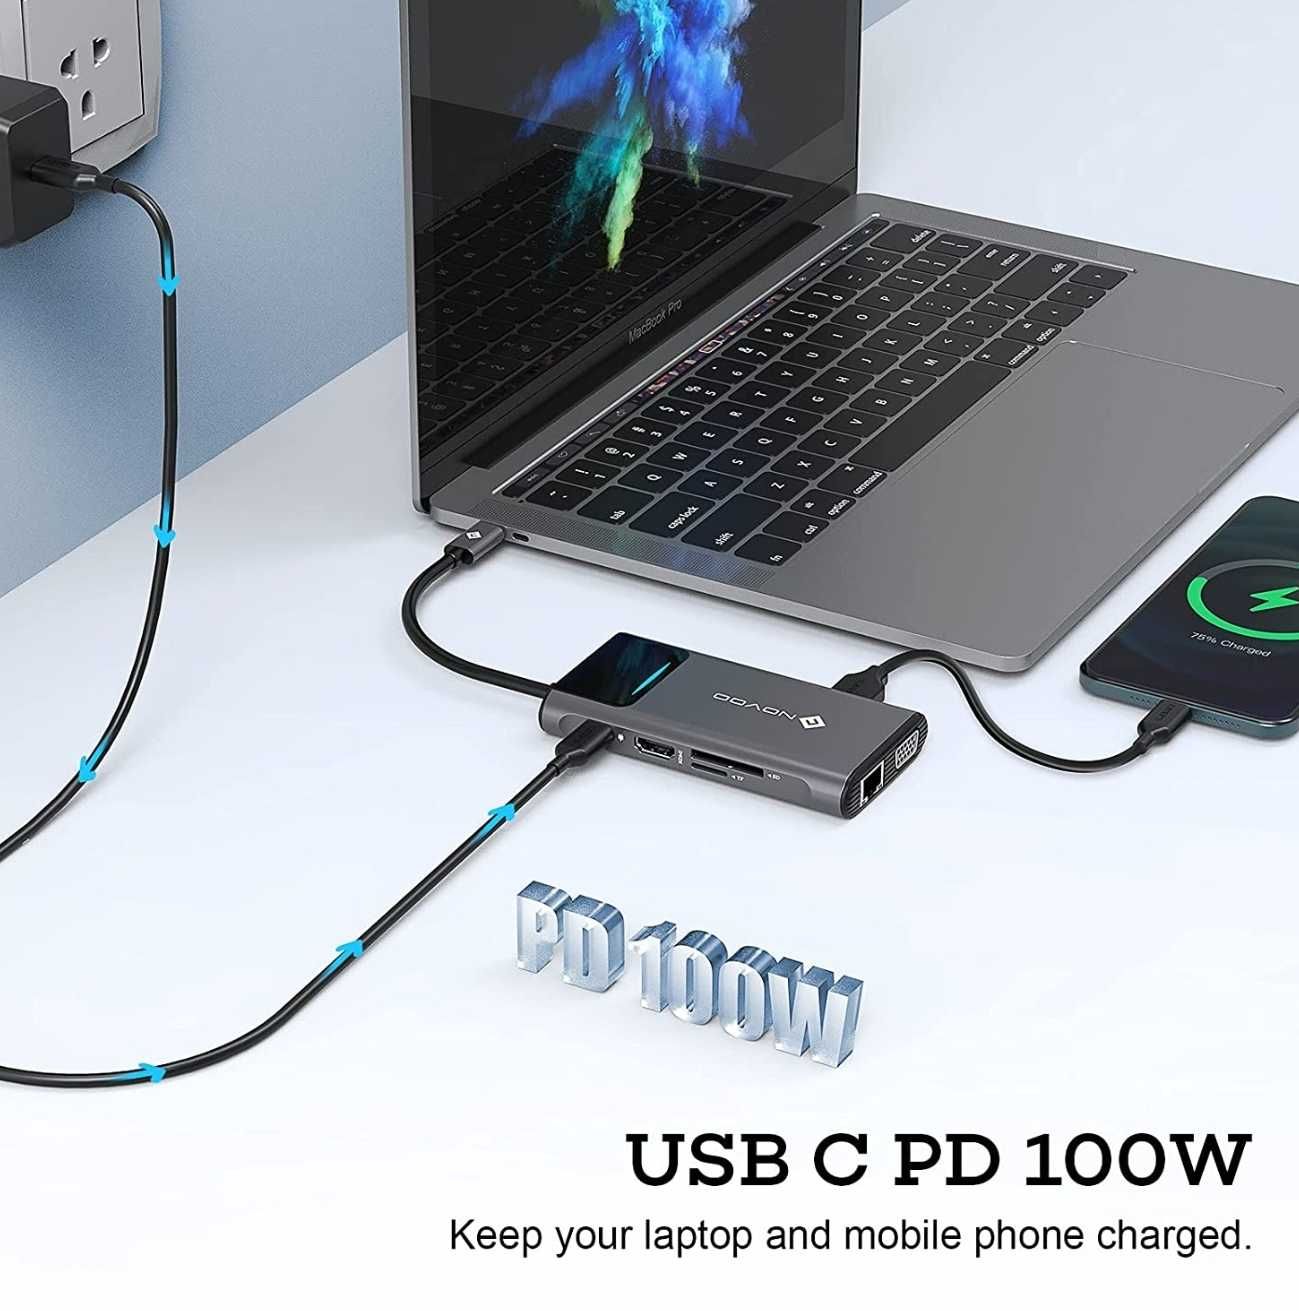 Промо! USB C 9 в 1 докинг станция / хъб - HDMI 4K, VGA USB 3.0 Type C